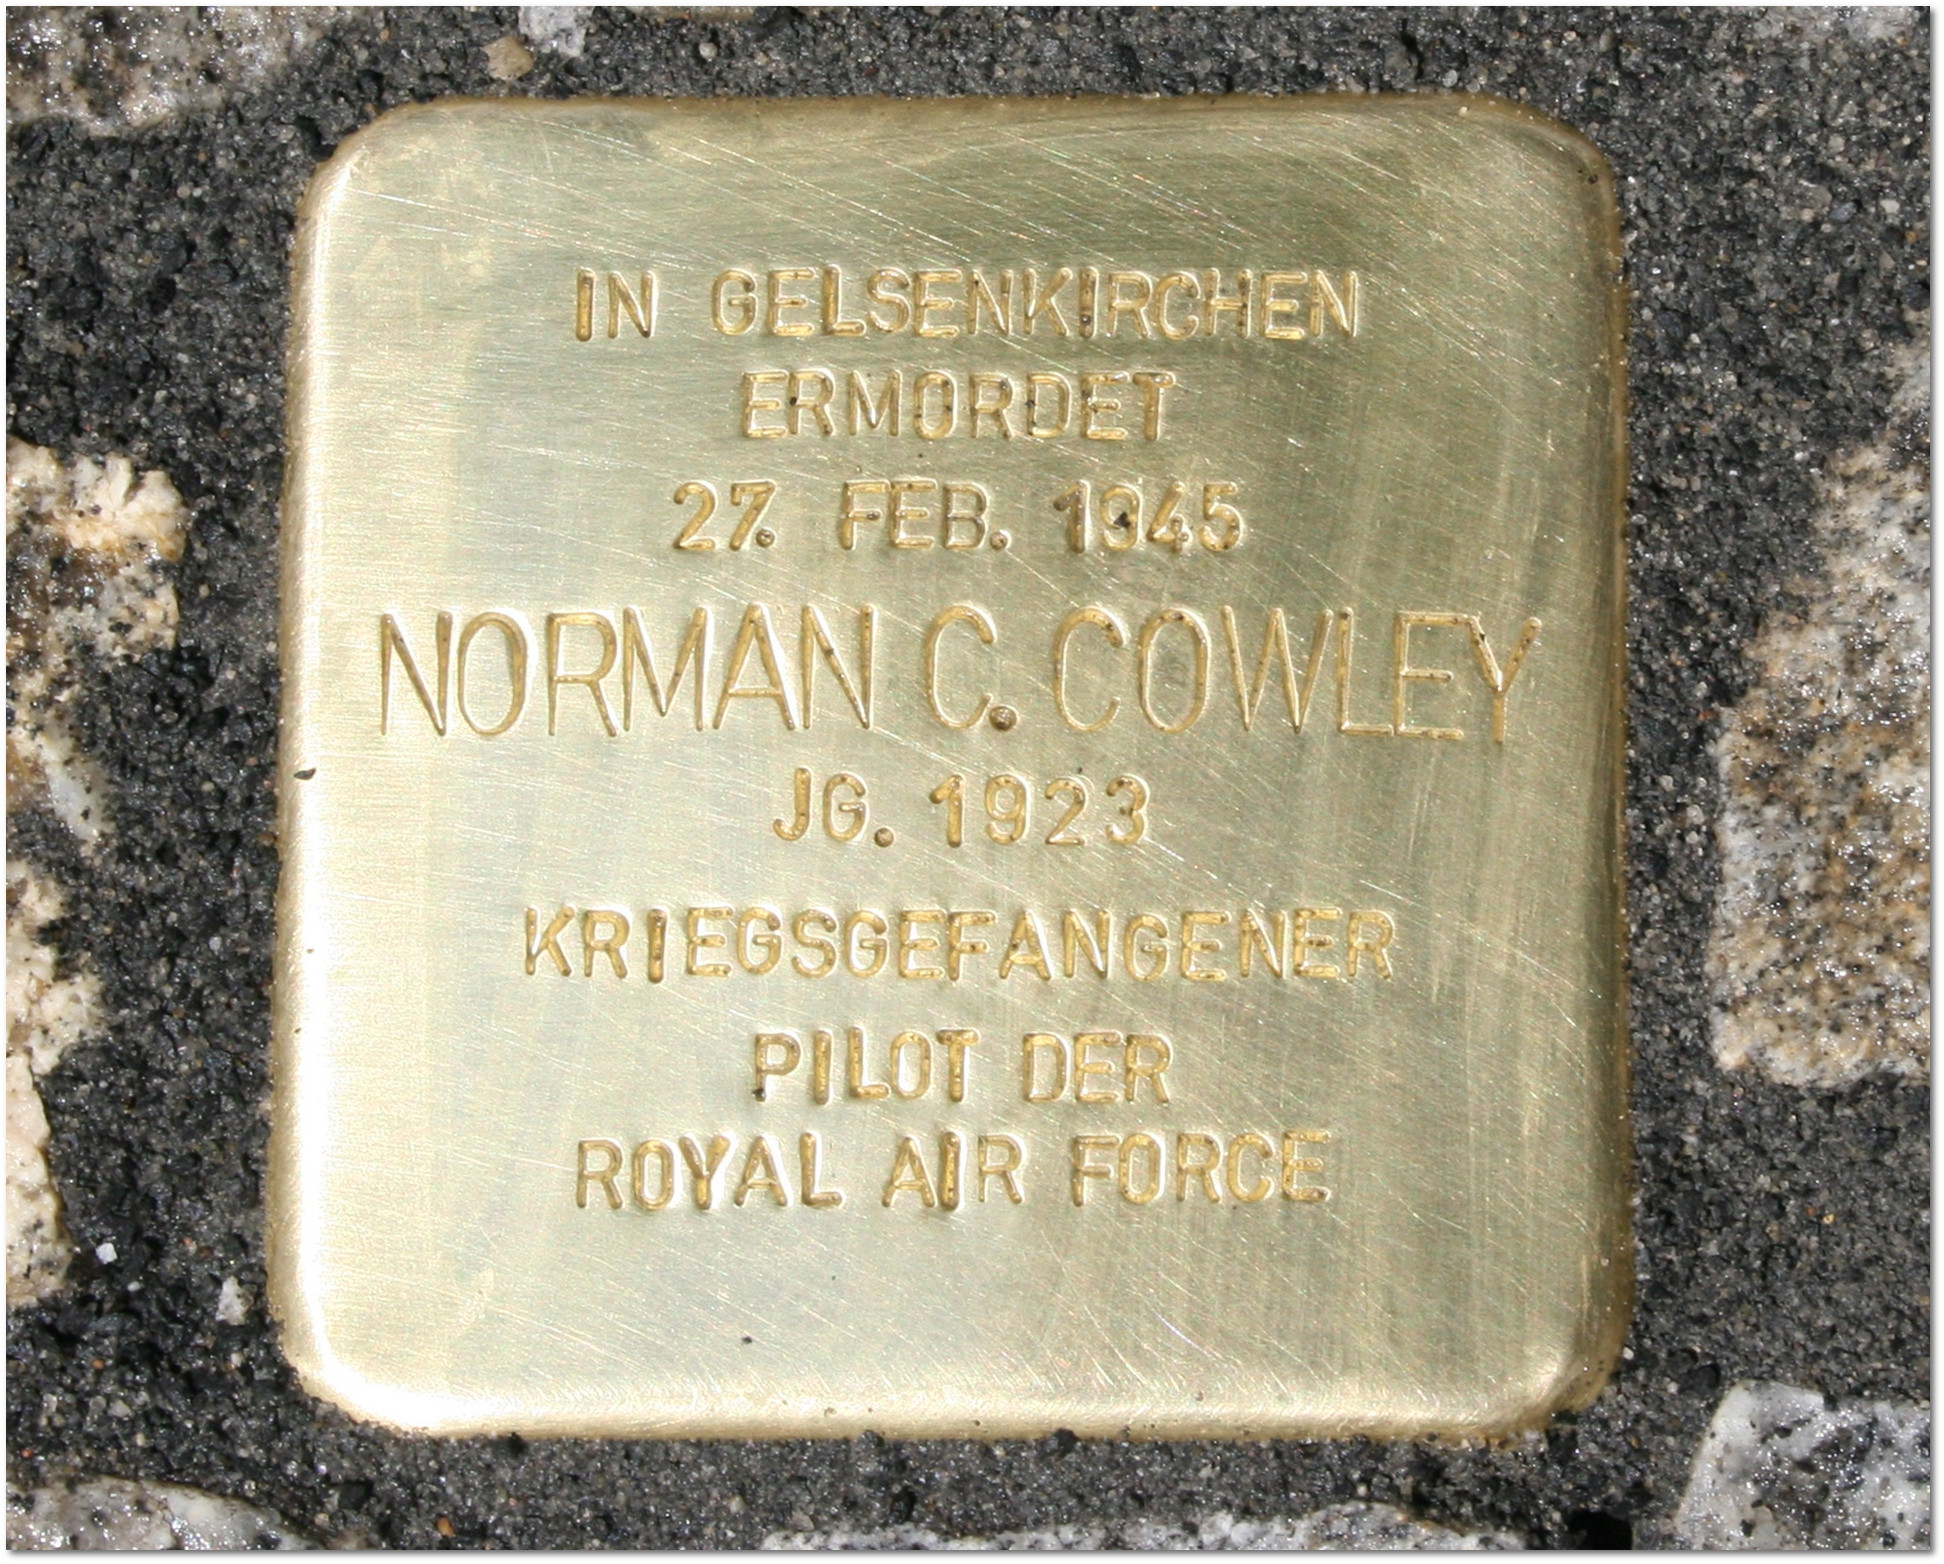 Stolpersteinverlegung für Norman C. Cowley in Gelsenkirchen